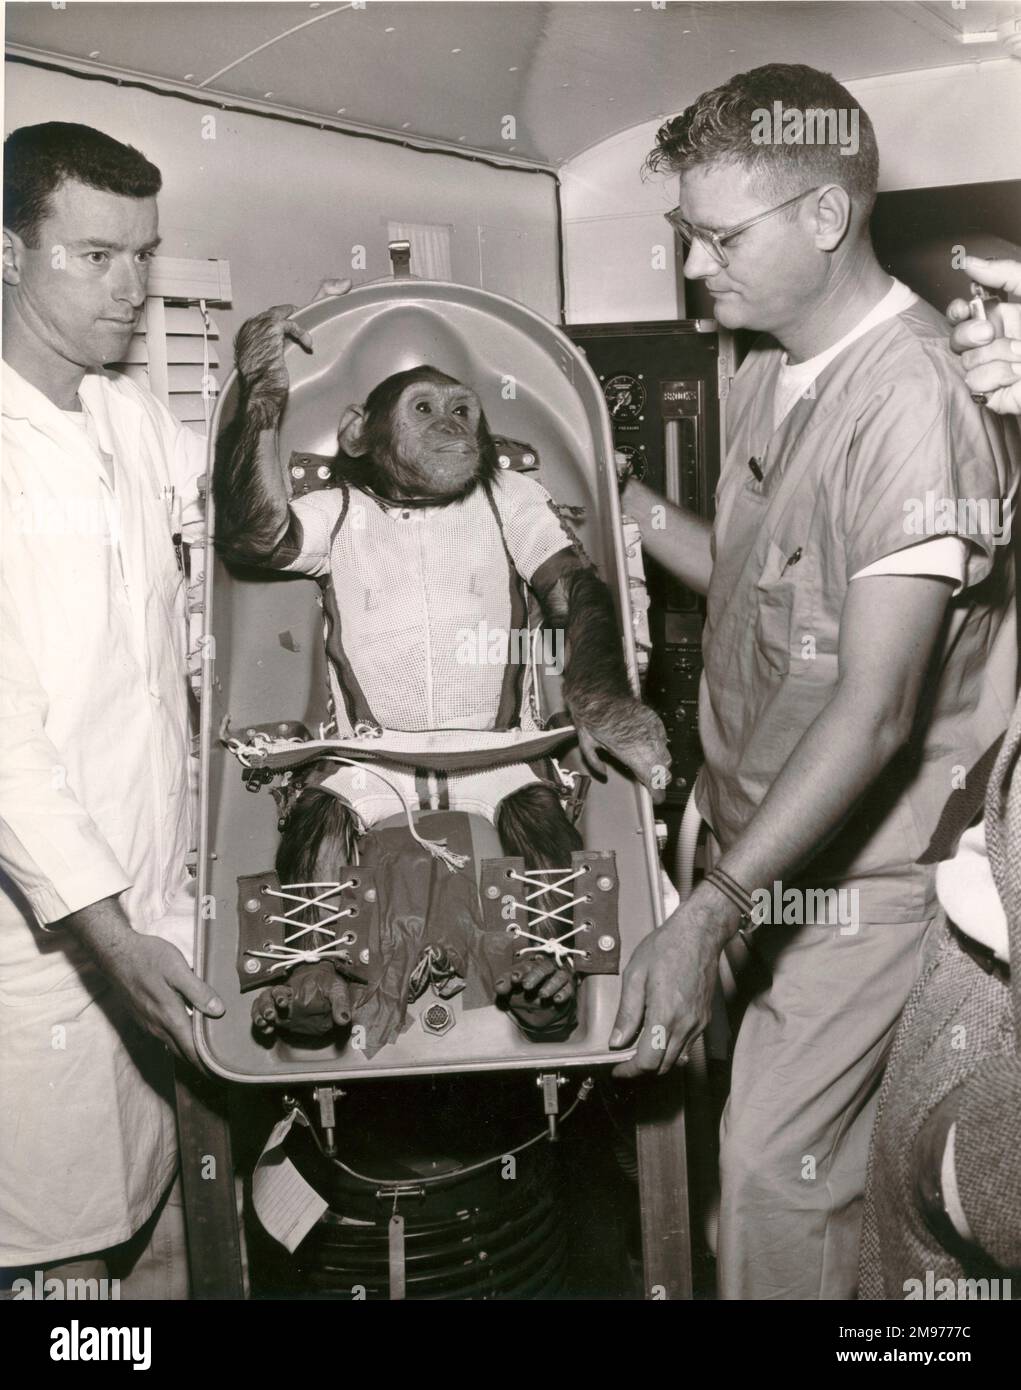 Ham - uno scimpanzé di 37 libbre - divenne il primo ‘astronauta’ dell’America quando fu lanciato da Cape Canaveral a bordo del volo suborbitale Mercury-Redstone (MR-2) il 31 gennaio 1961. In un promemoria scritto il giorno successivo, Warren J. North della NASA ha osservato: “Il prosciutto sembrava in buone condizioni fisiologiche, ma più tardi, quando gli è stato mostrato il veicolo spaziale, era visivamente evidente che non aveva più interesse a collaborare con il programma di volo spaziale”. Foto Stock